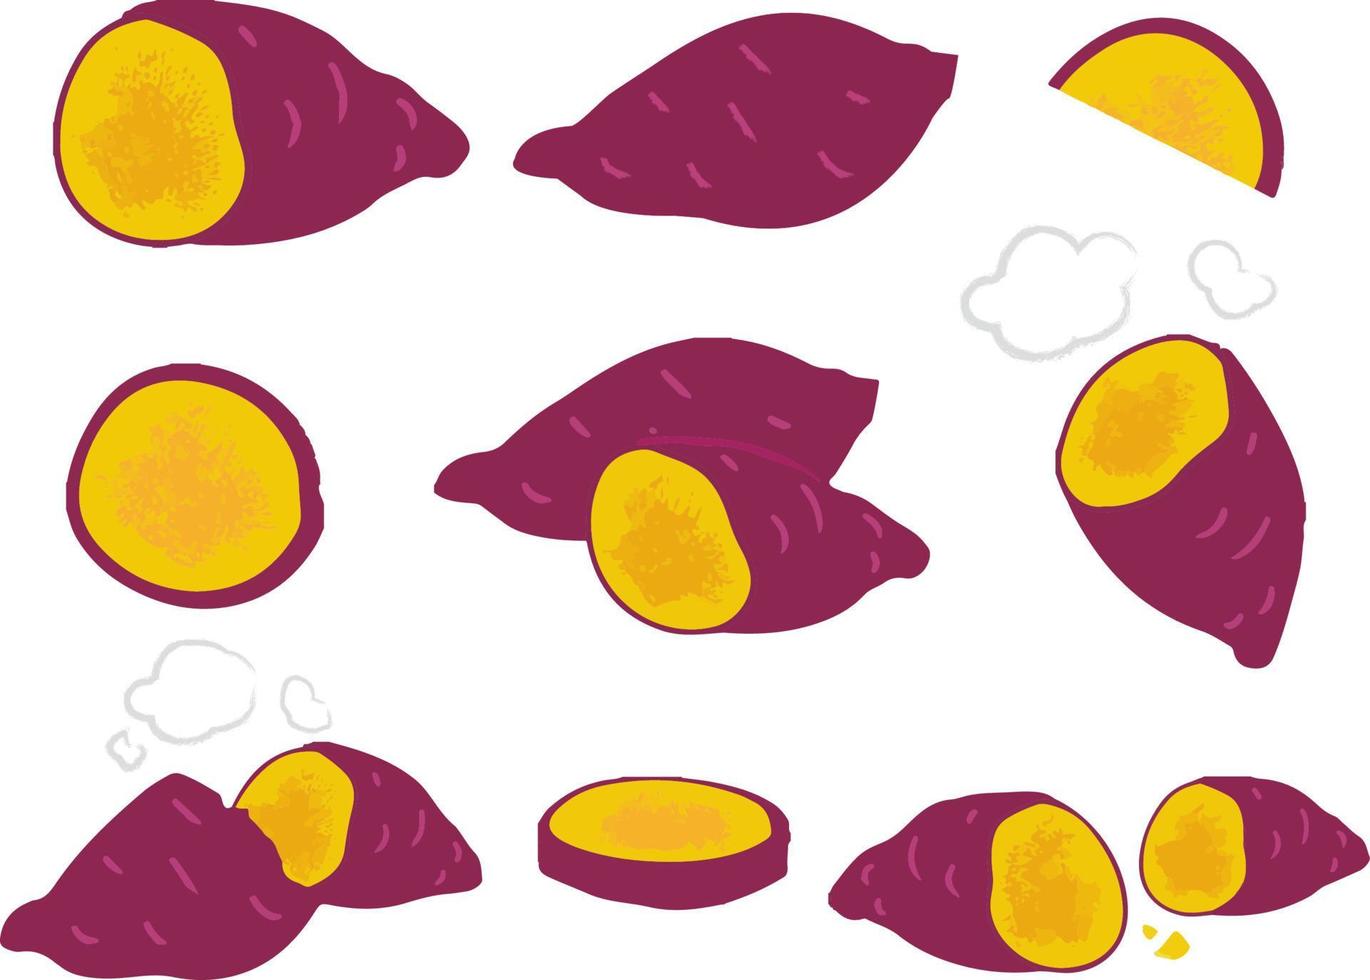 conjunto colorido de vetor de batata-doce isolado no branco. batata ou inhame com pele vermelha, vegetais de desenho animado usados para pôster, site, folheto, tag